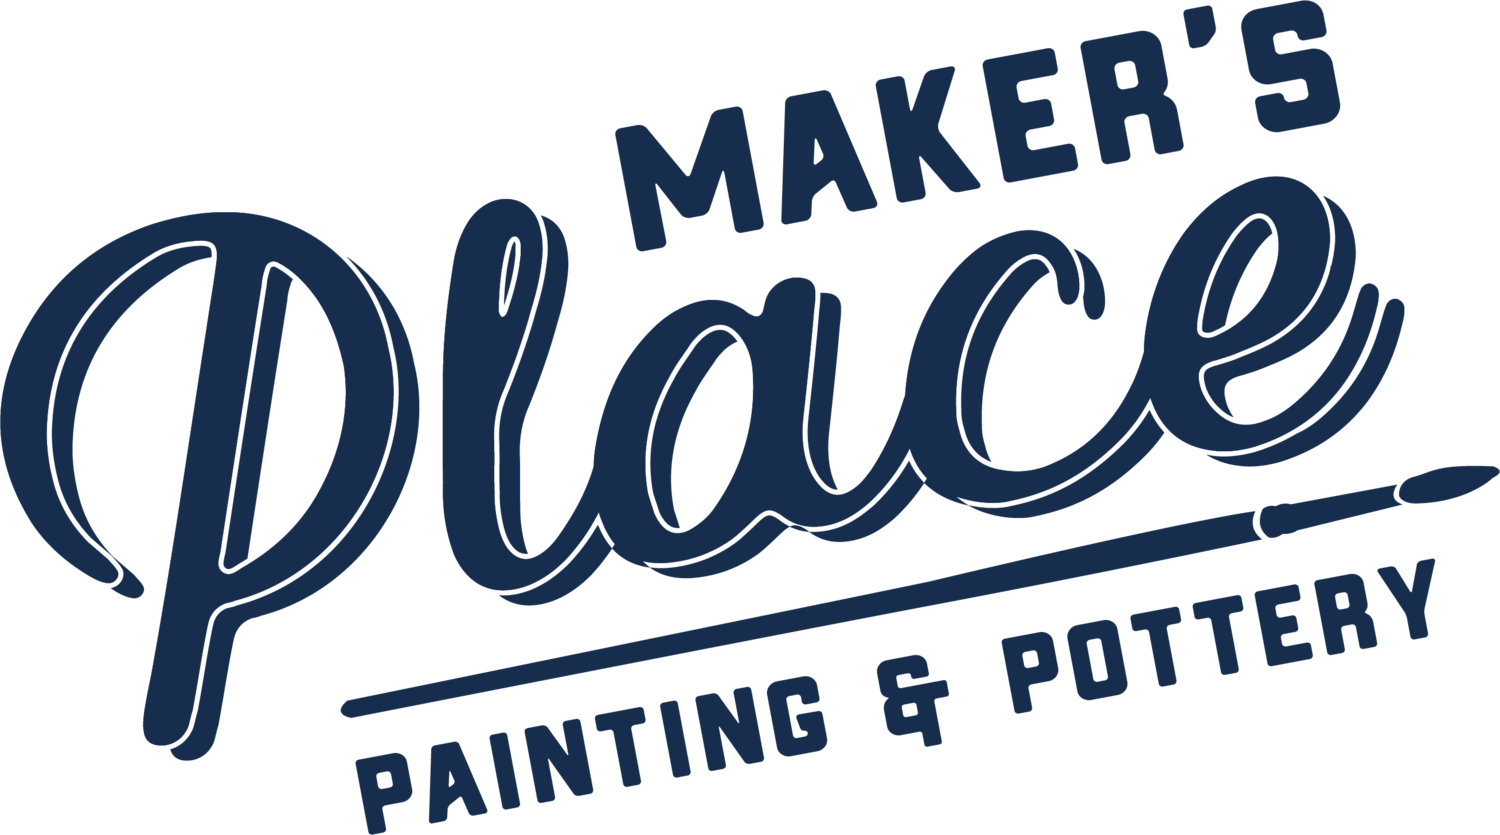 Maker's Place